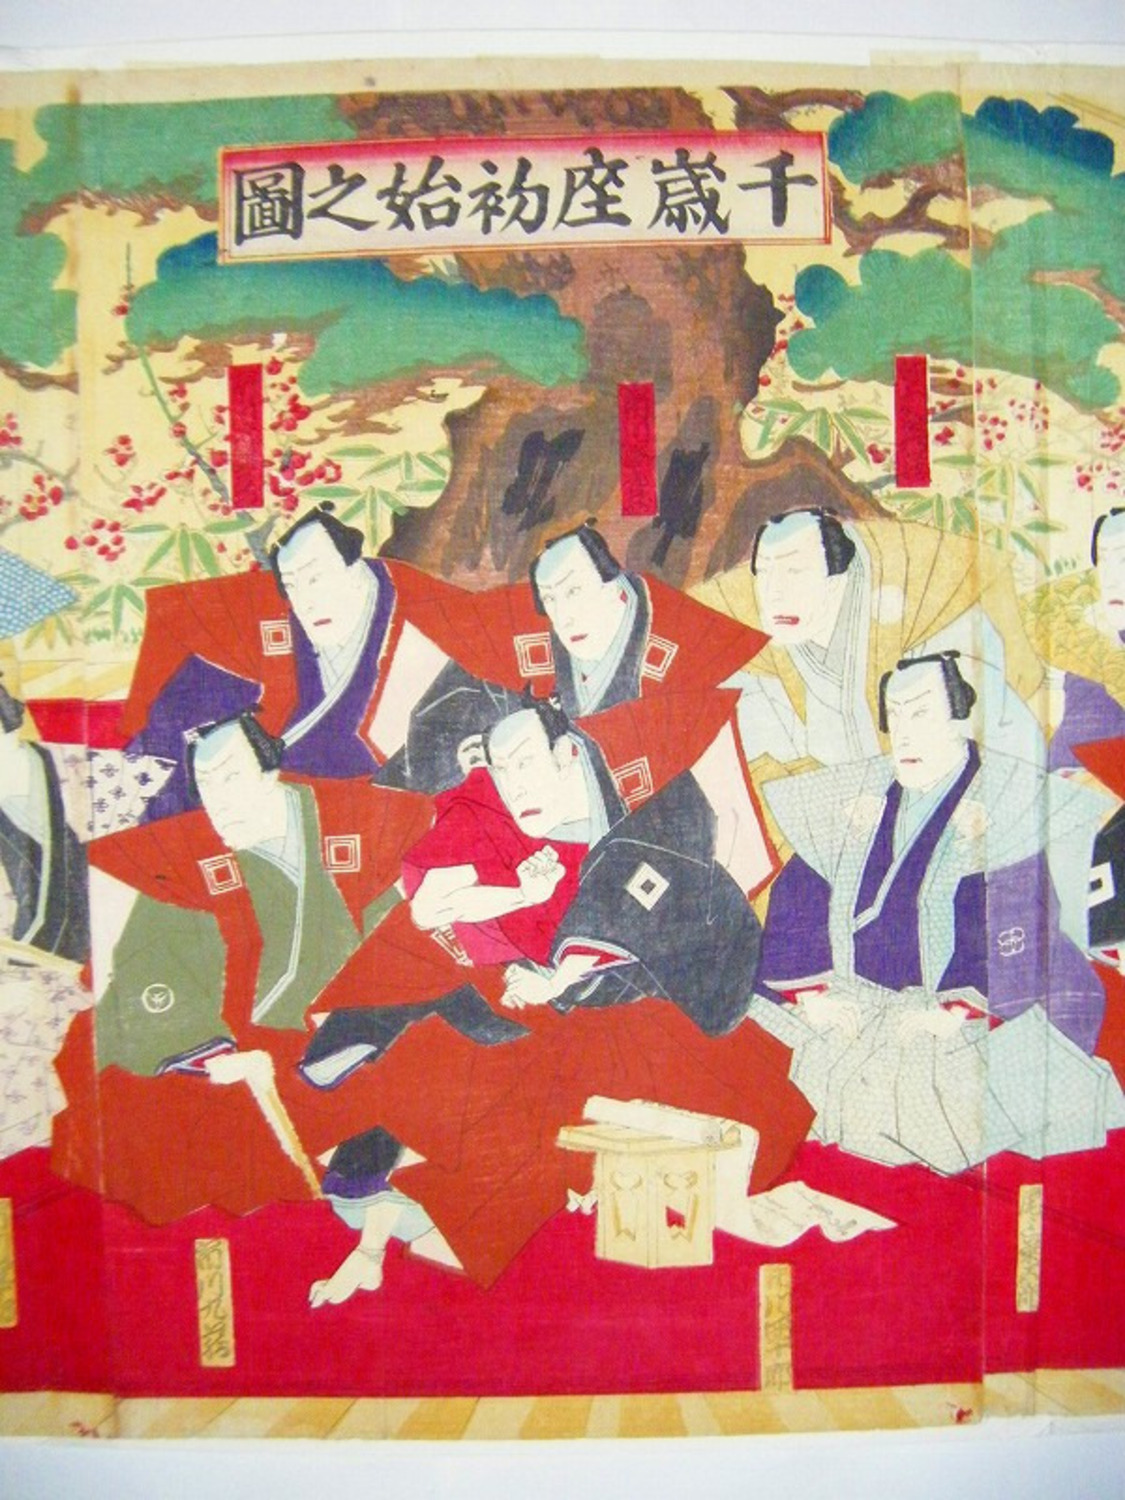 明治 初期 浮世絵 国周 俳優 番付 歌舞伎「千歳座 初始之図 3枚組」ukiyoe 彩色 木版画